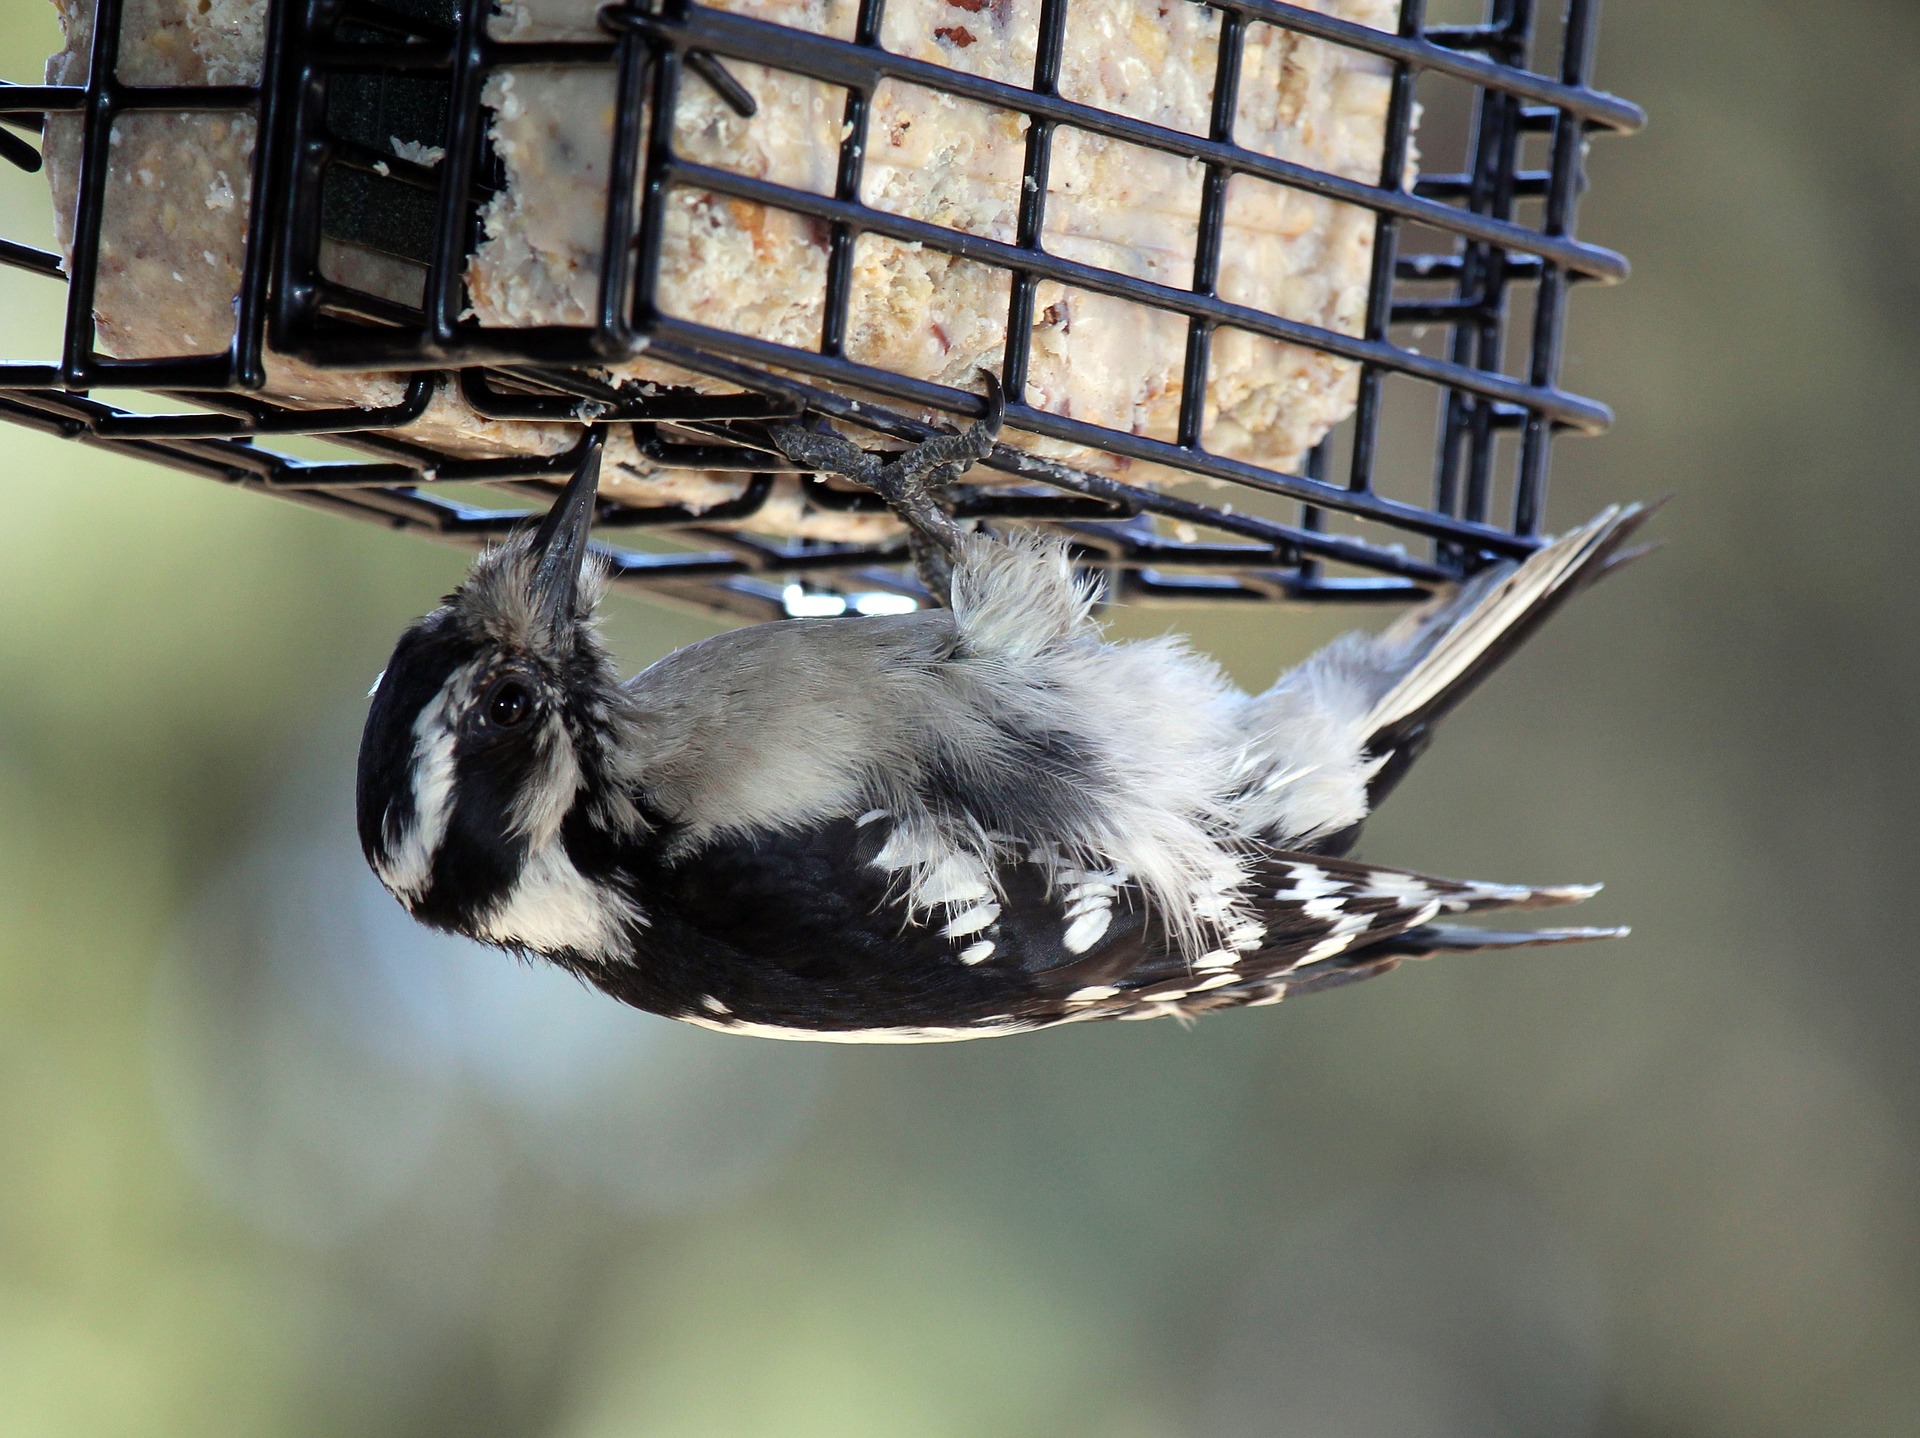 Bird eating suet from a feeder